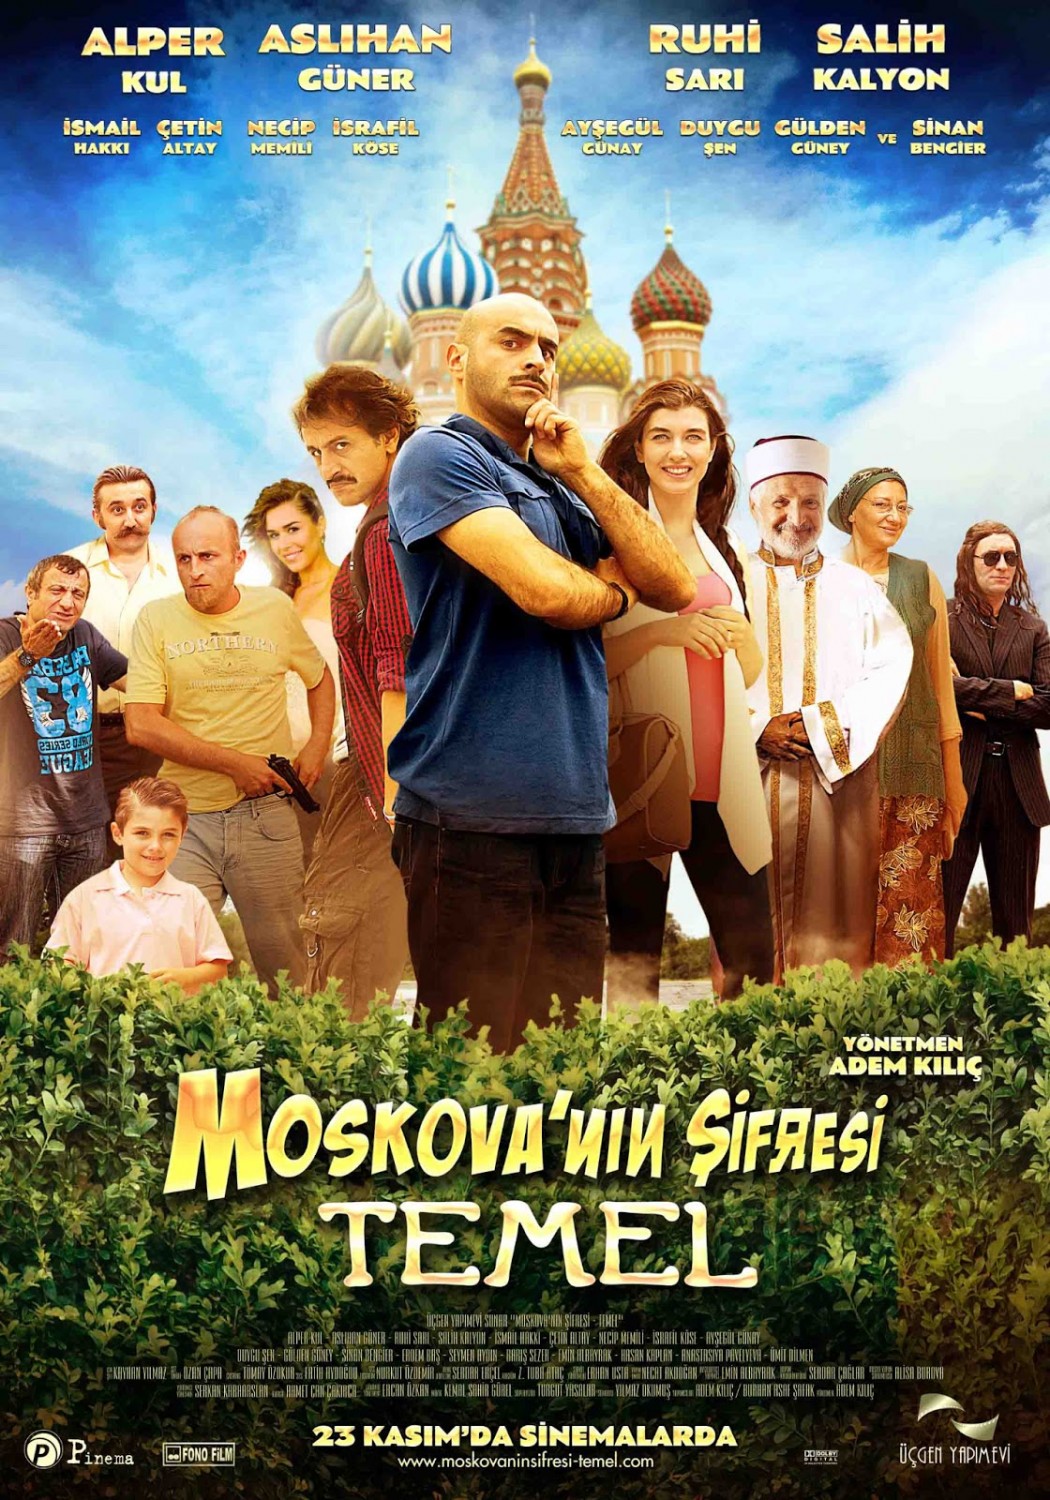 Extra Large Movie Poster Image for Moskova'nın Şifresi Temel (#2 of 2)